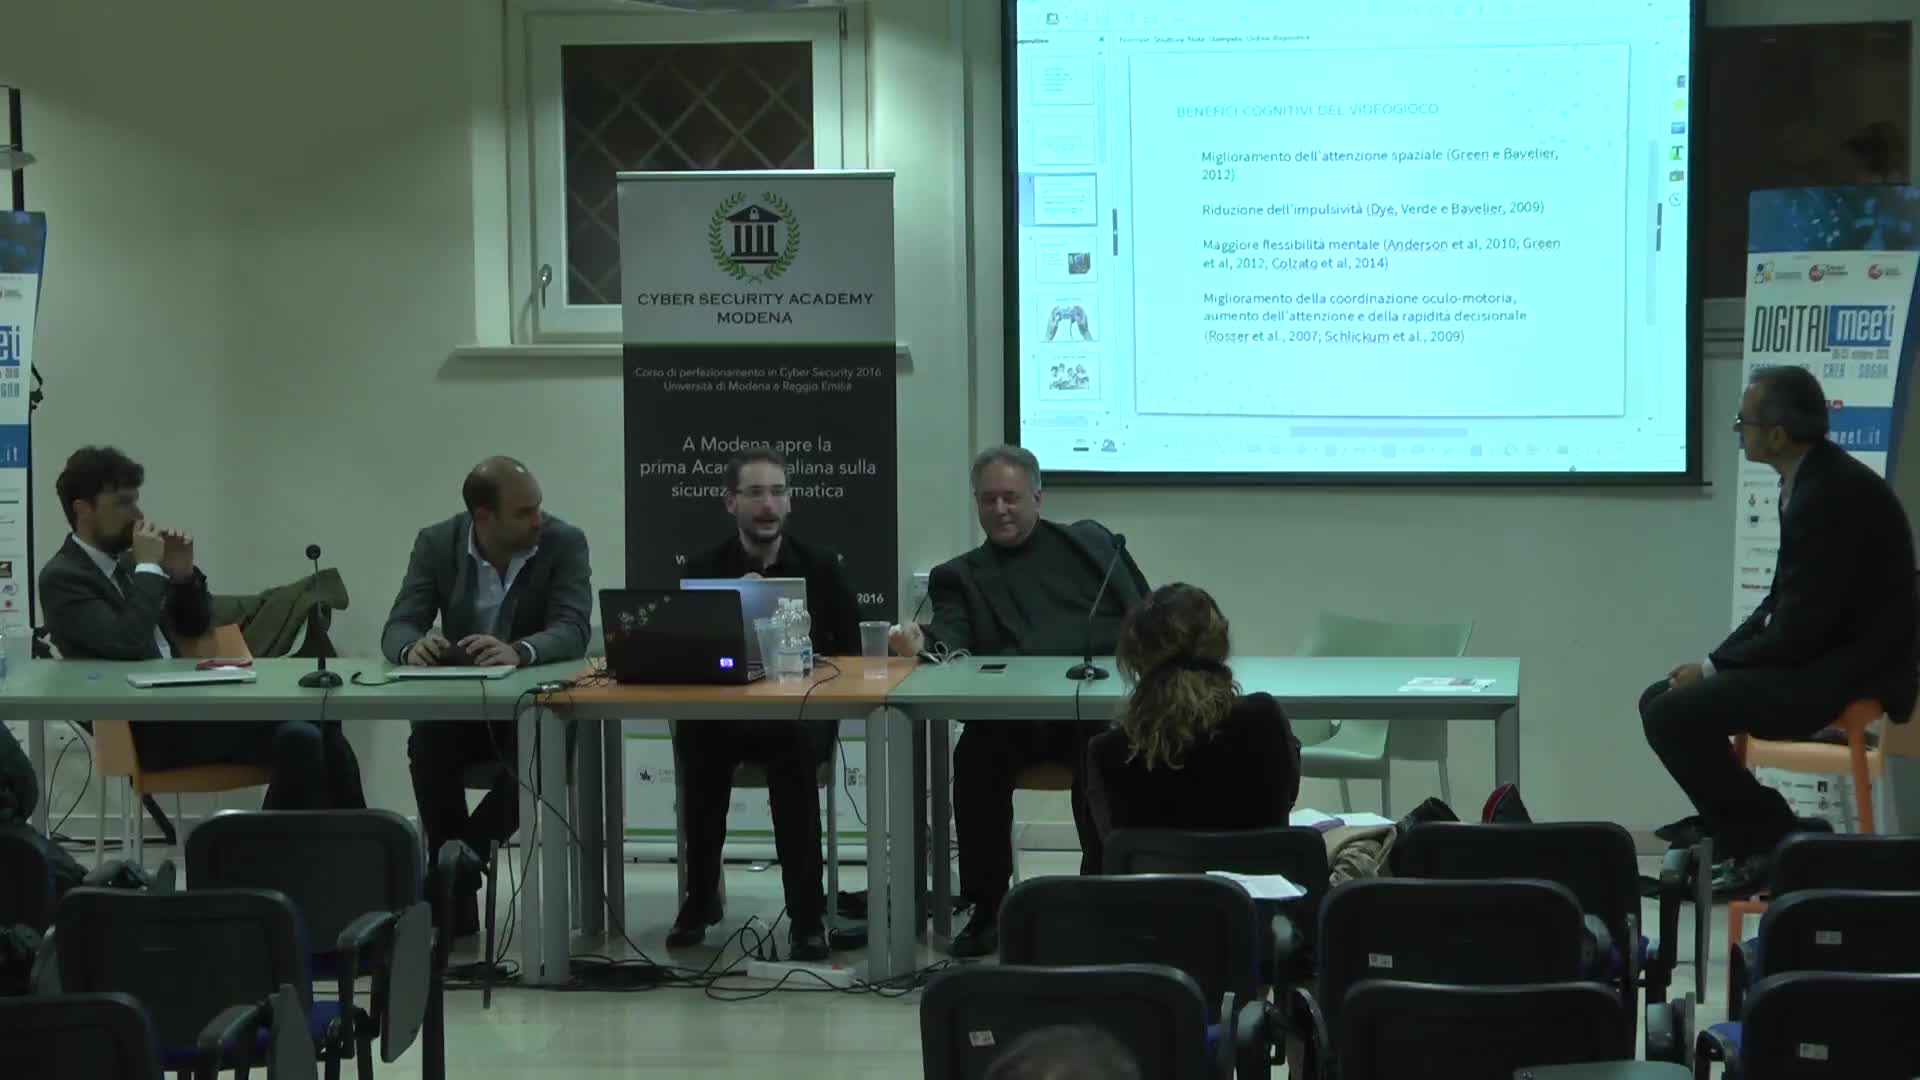 Modena Smart Life - Dibattito pomeridiano e conclusioni - immagine